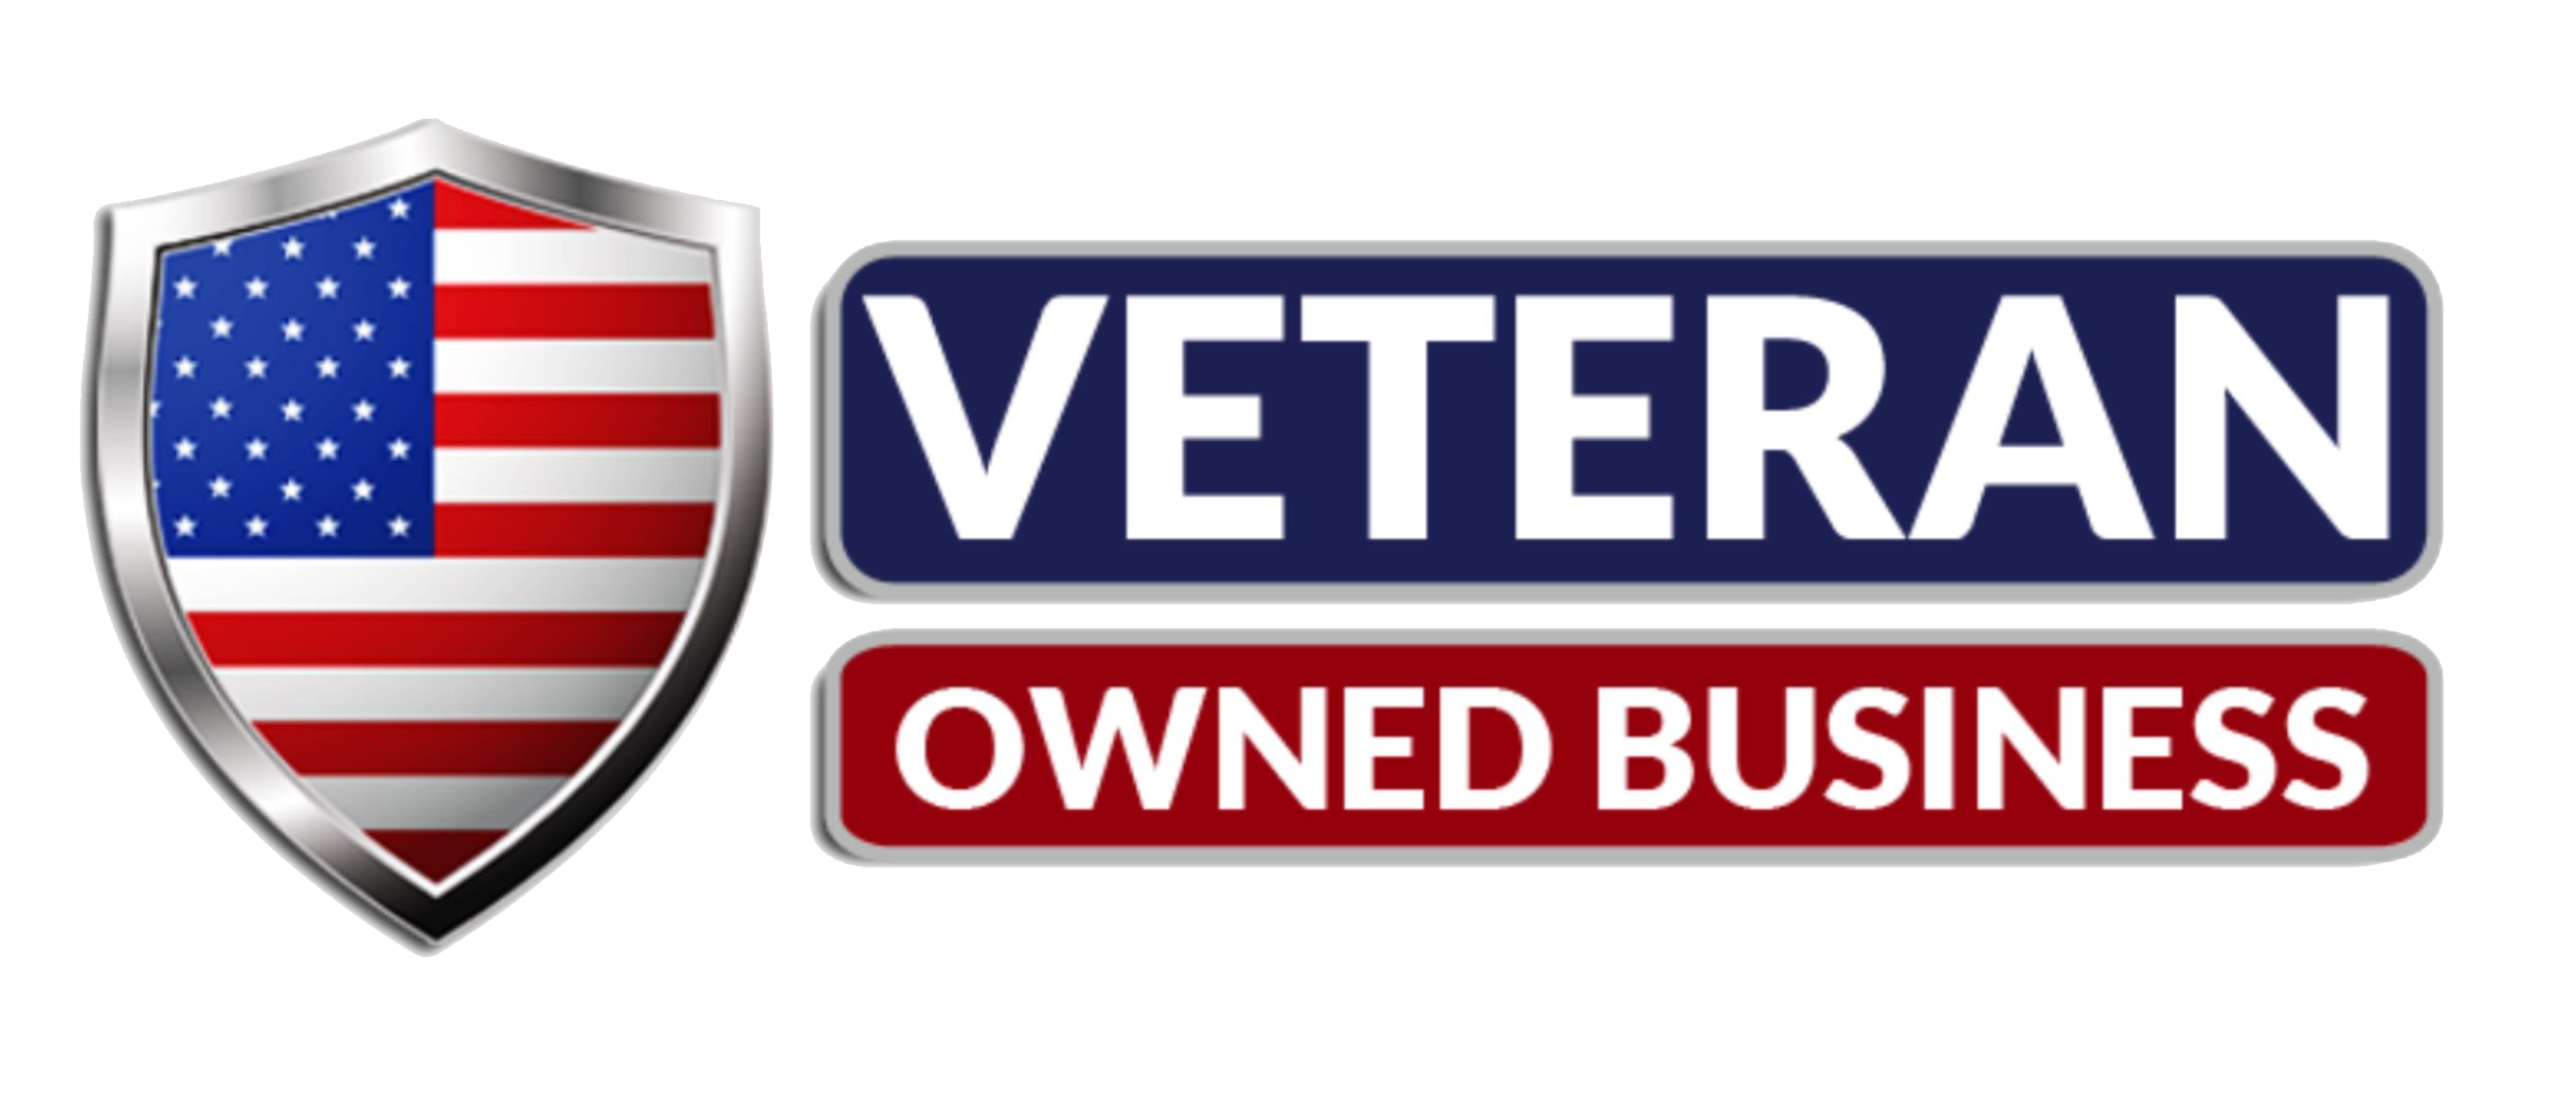 Image representing veteran-owned business